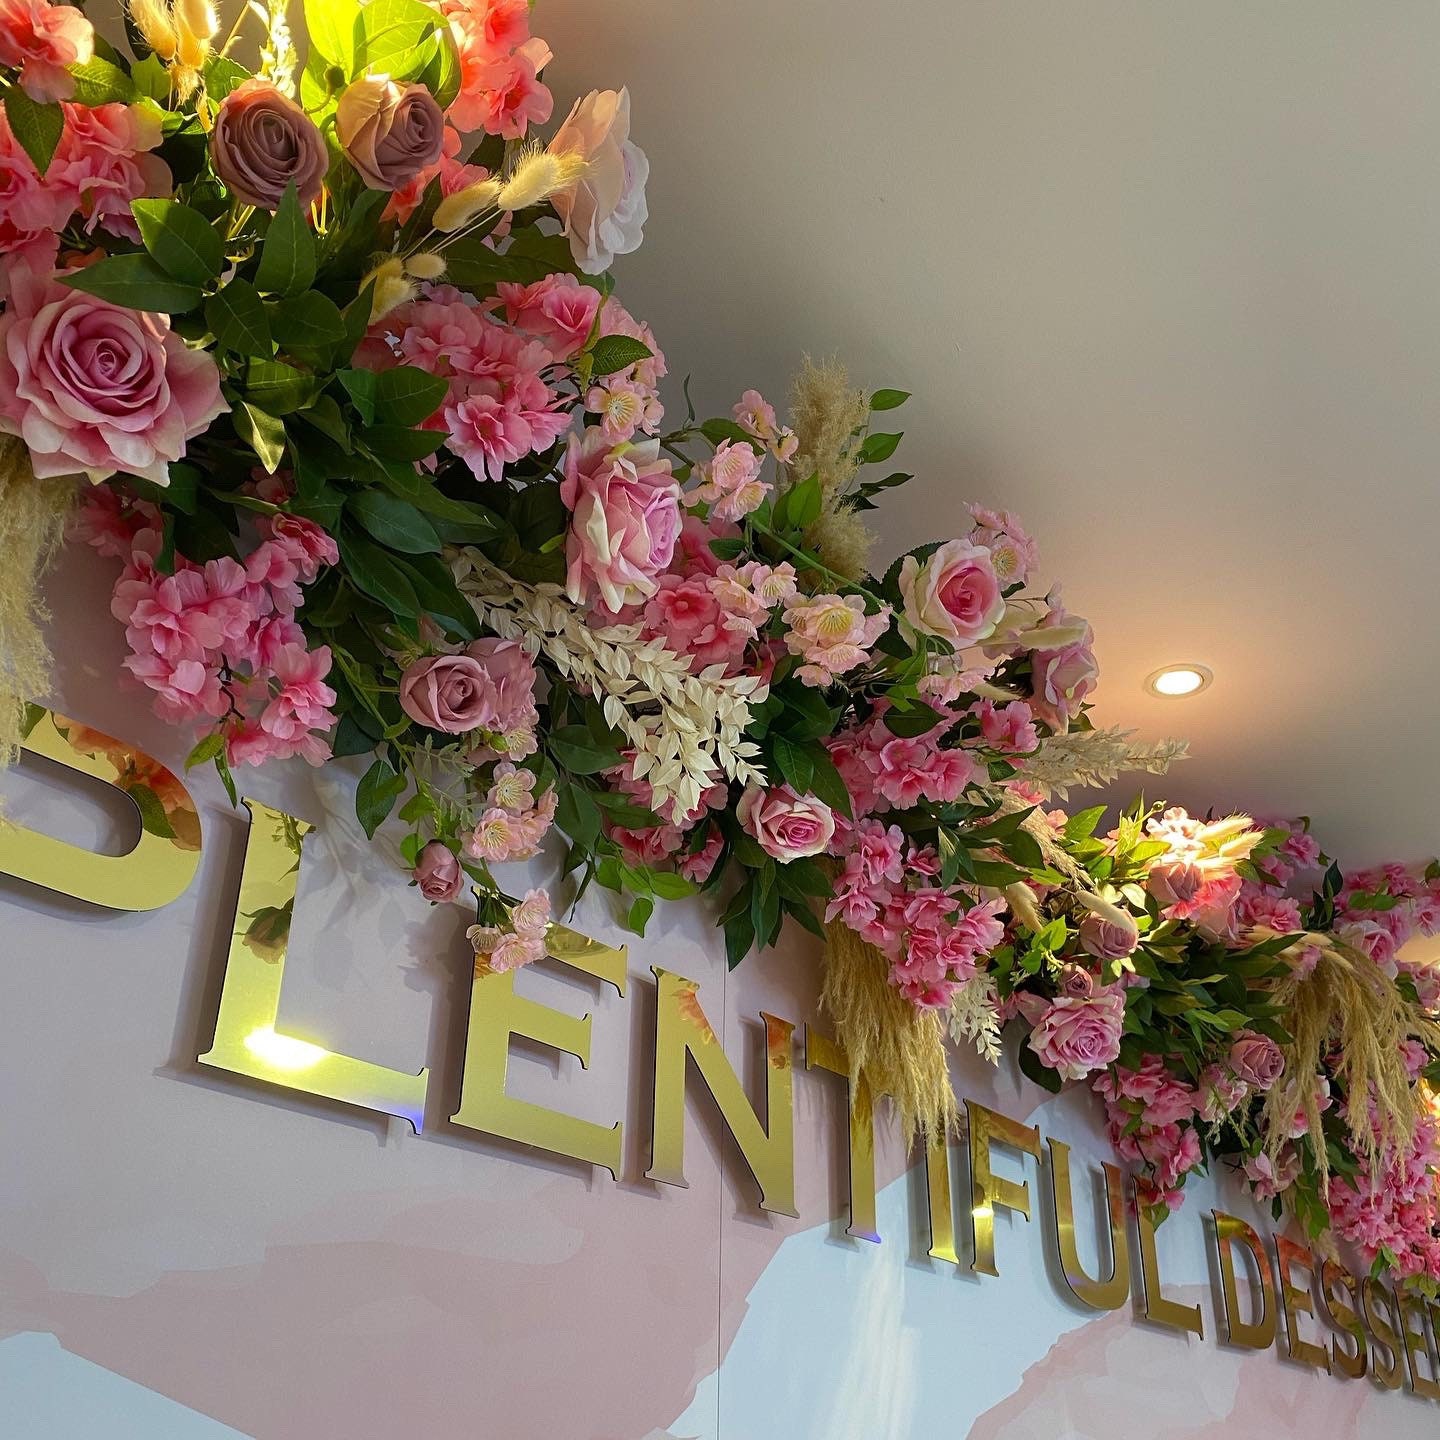 Flower Garland, Shop Front Display, Pink Flower Decor, Silk Flowers Outdoor Display, Restaurant